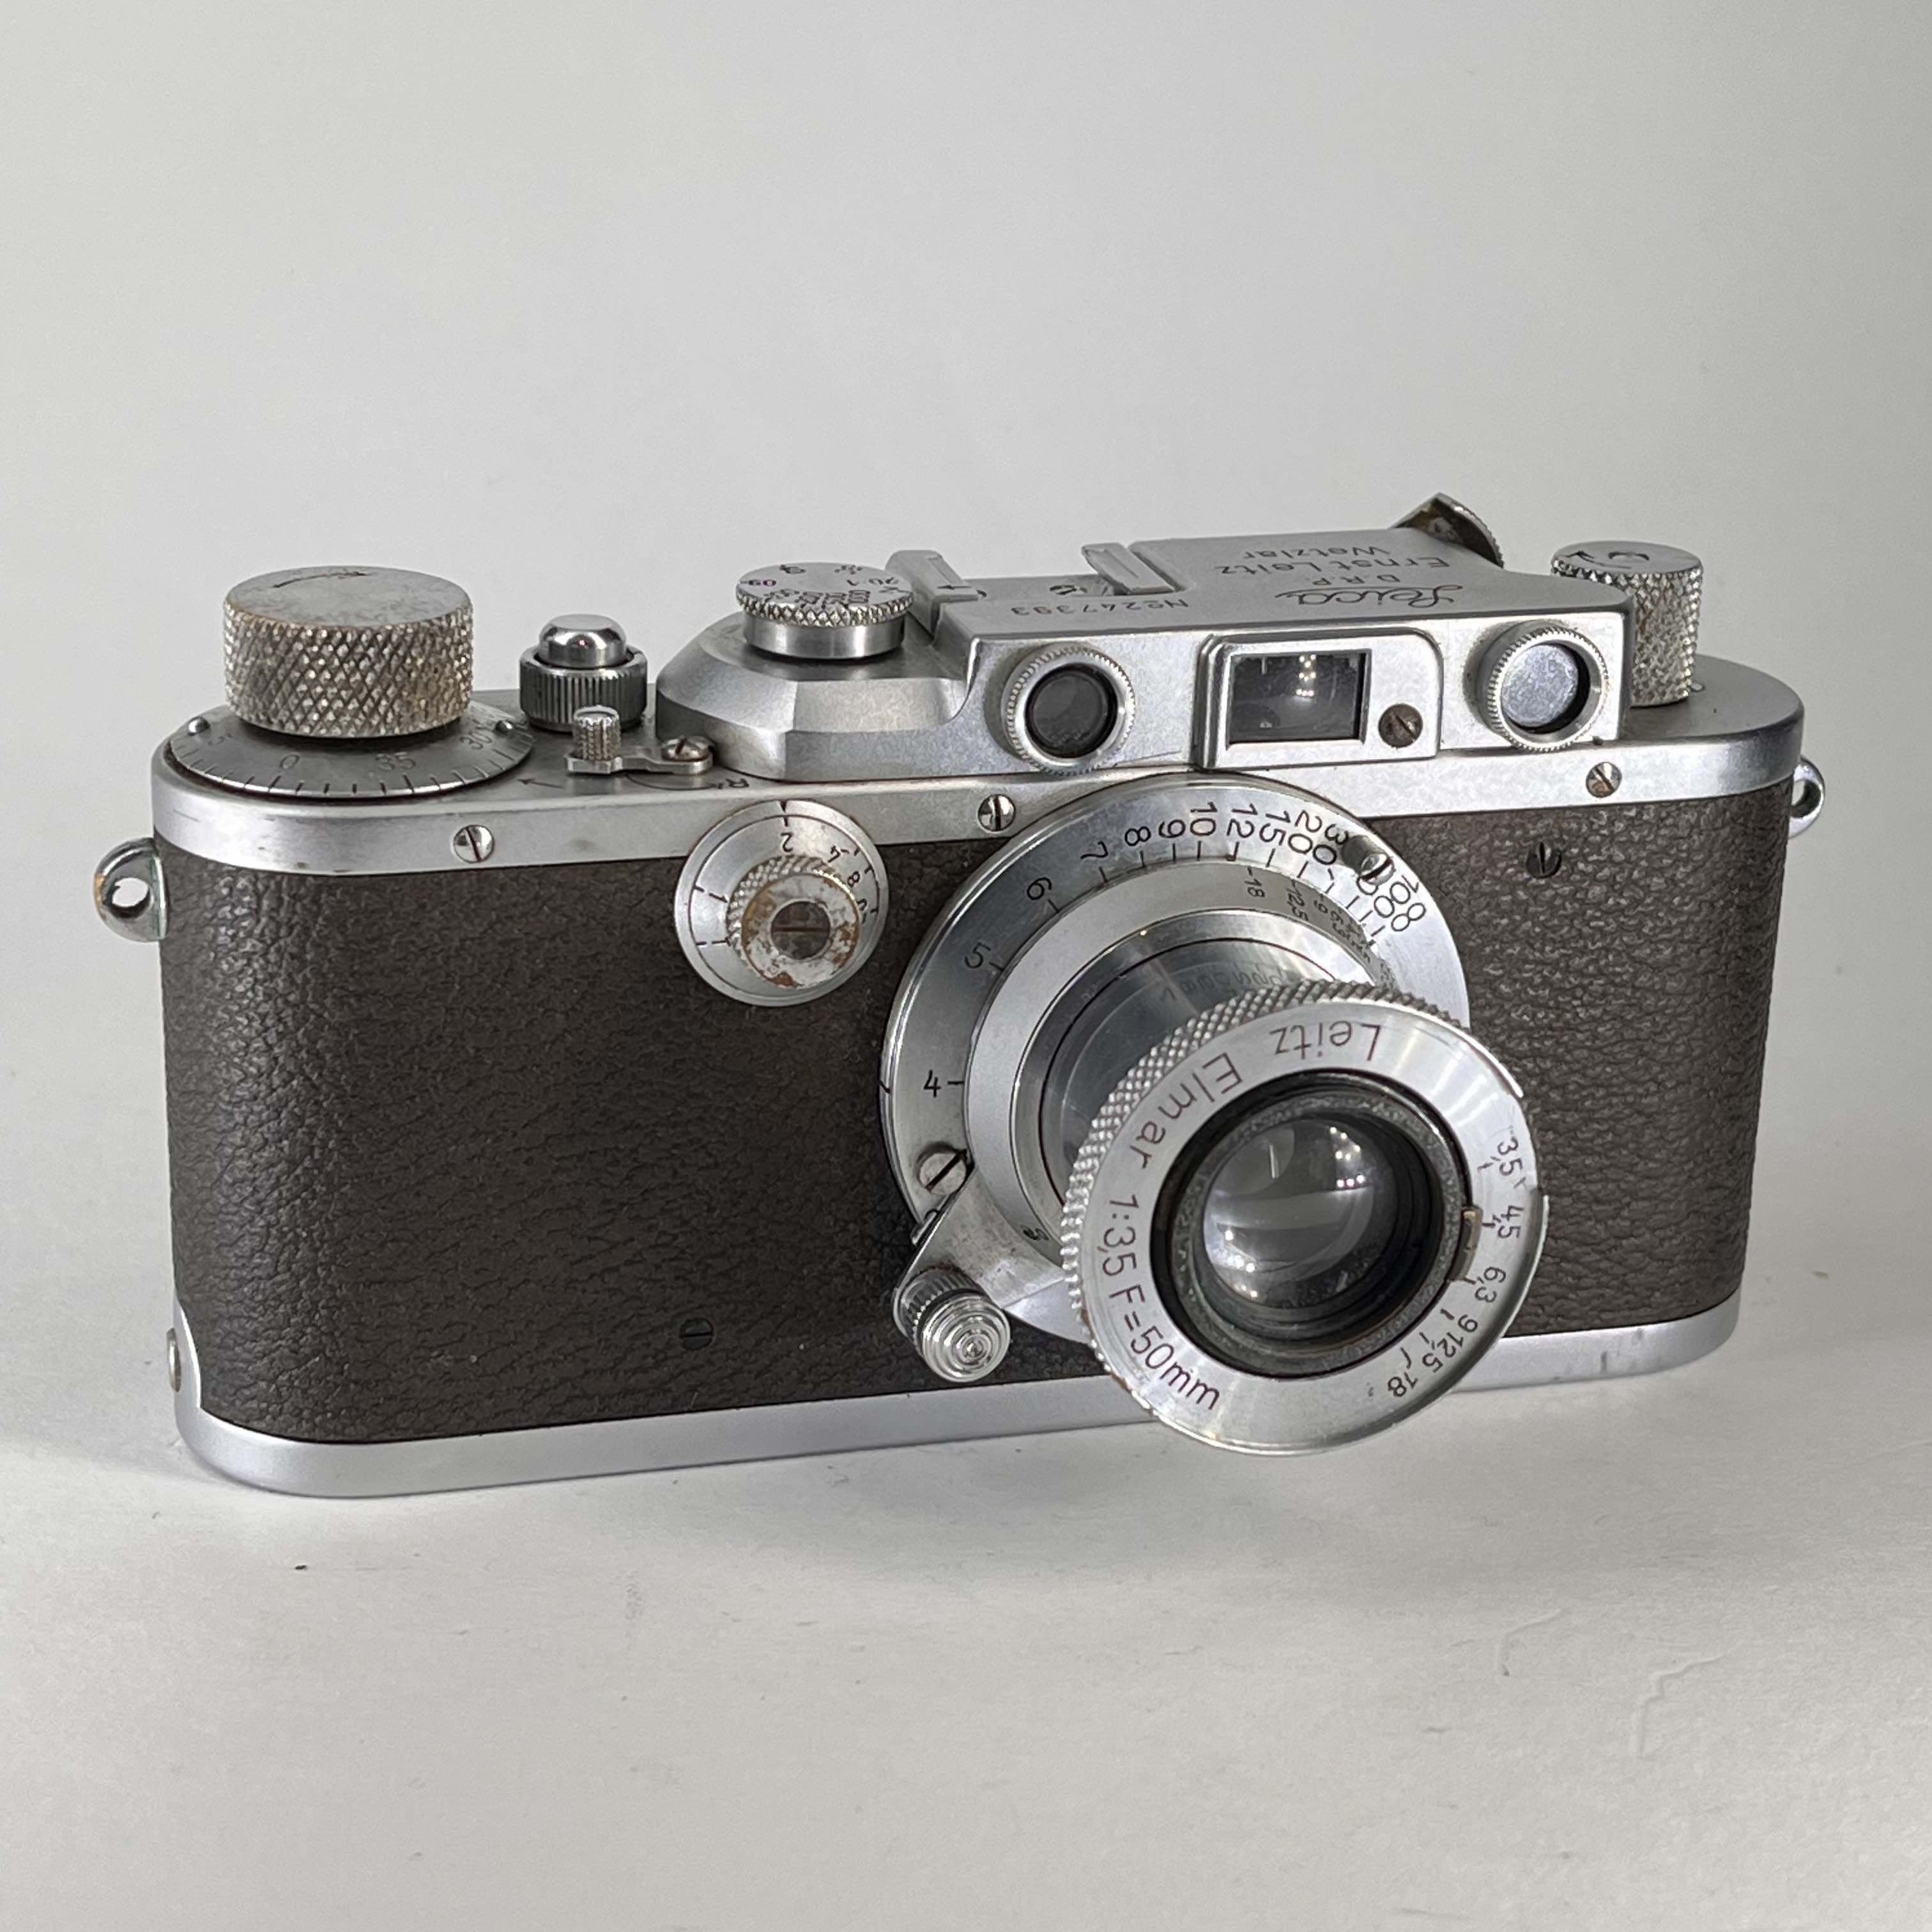 Leica IIIa rangefinder (1938) with Elmar 50mm f/3.5 lens 